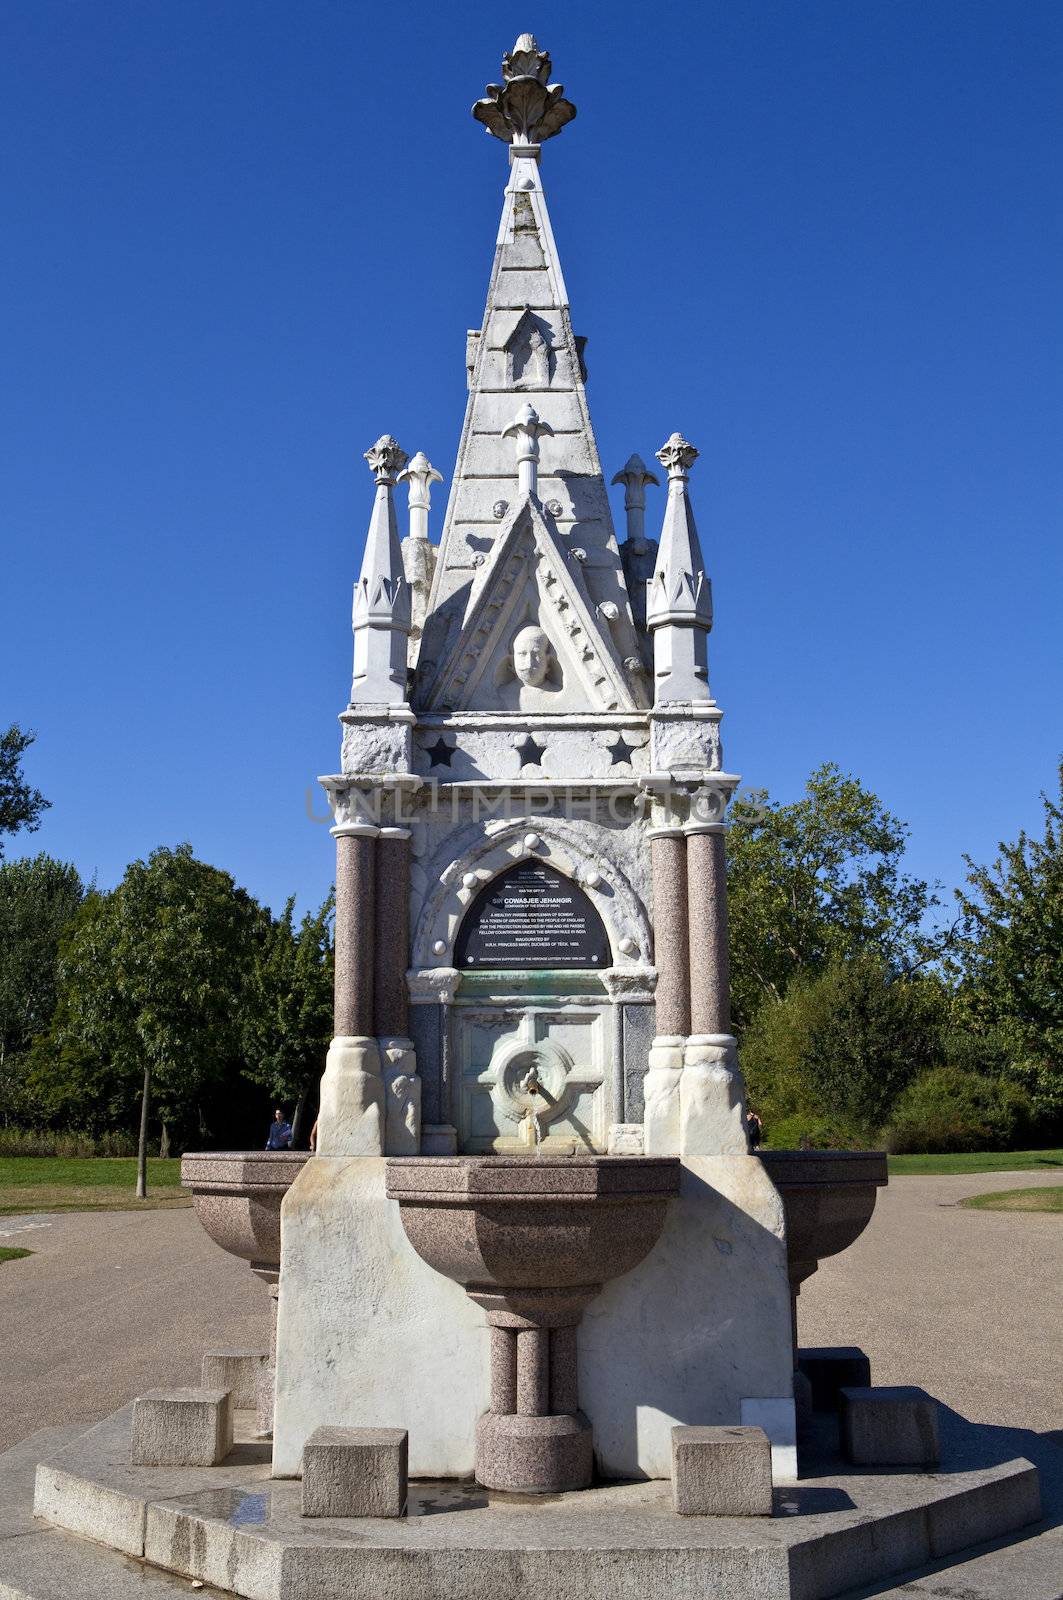 The Sir Cowasjee Jehangir Fountain in Regent's Park, London.